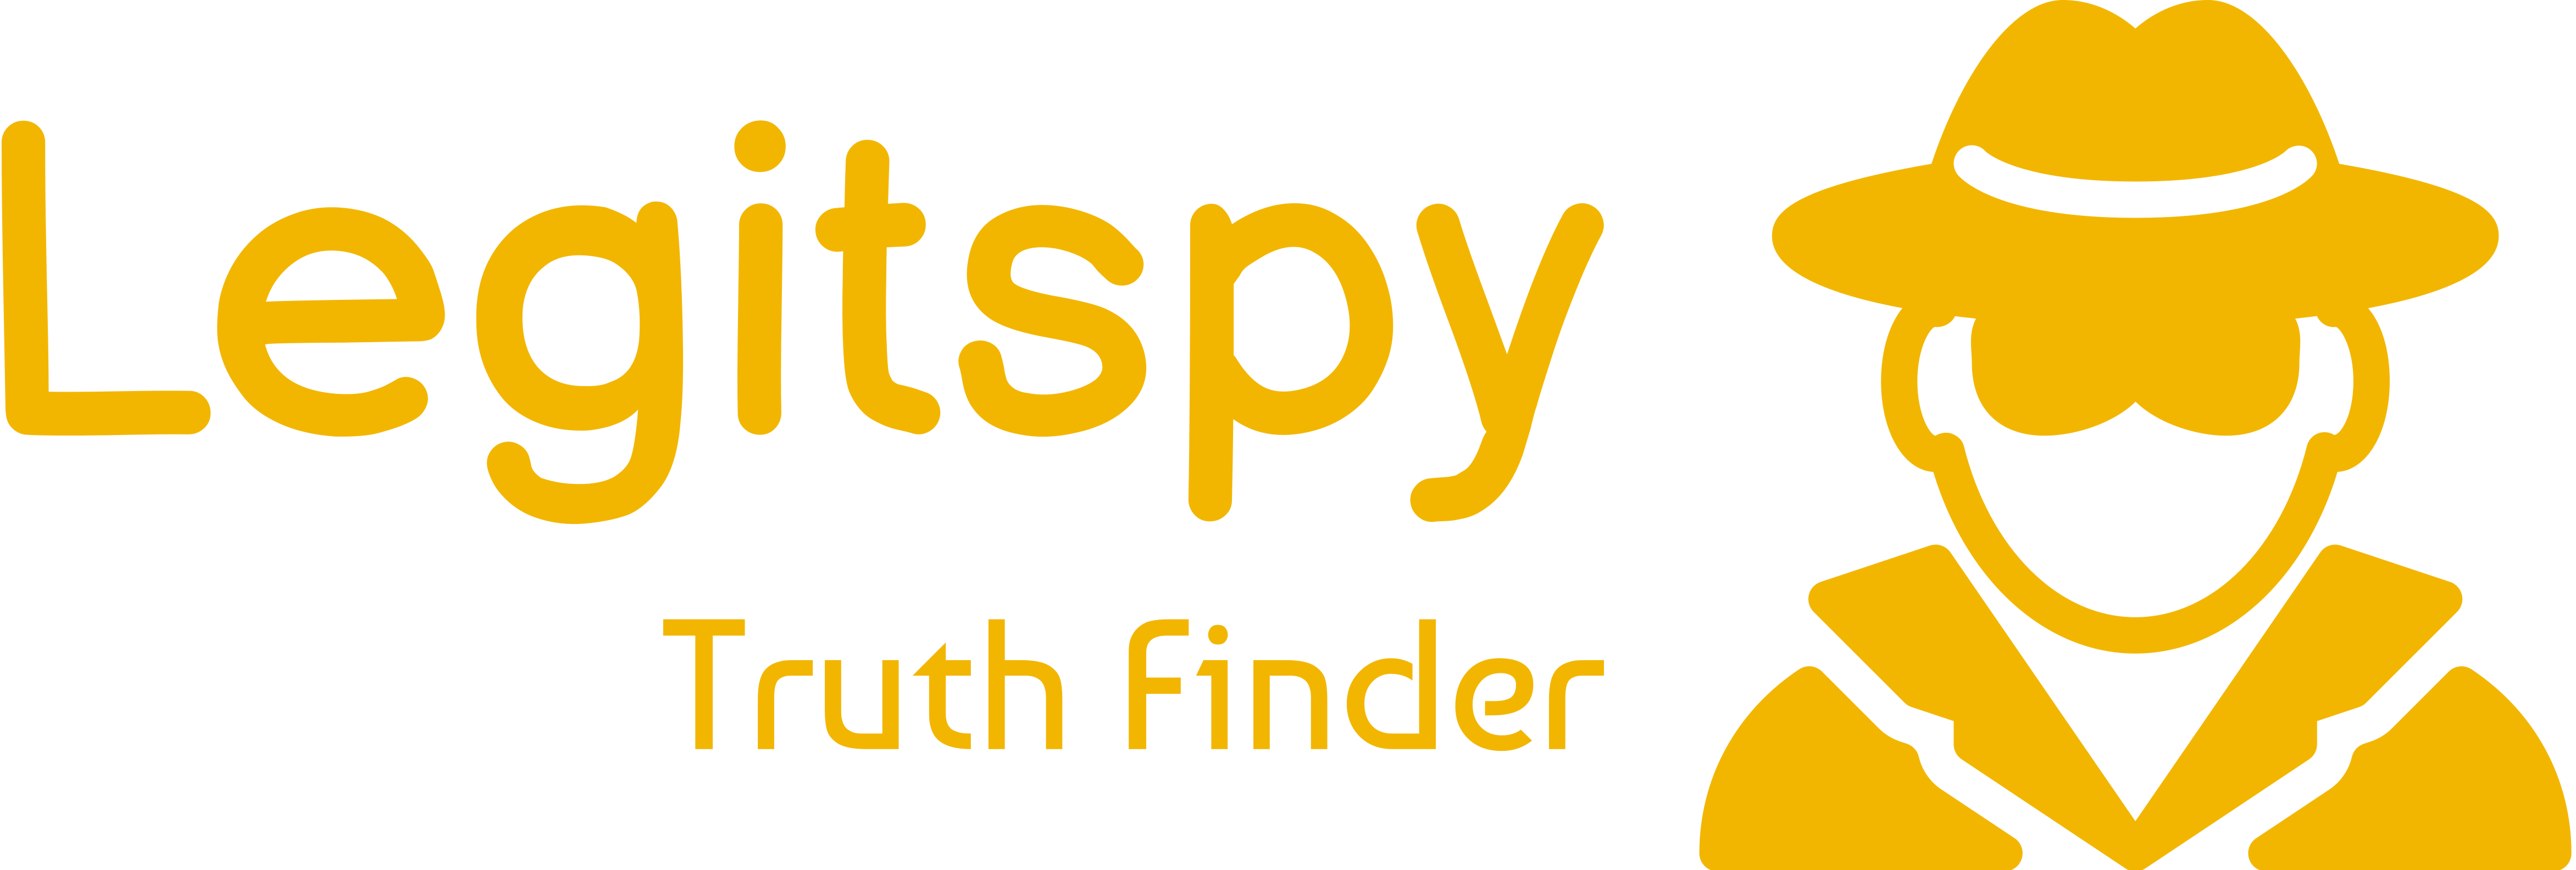 Legitspy's Logo